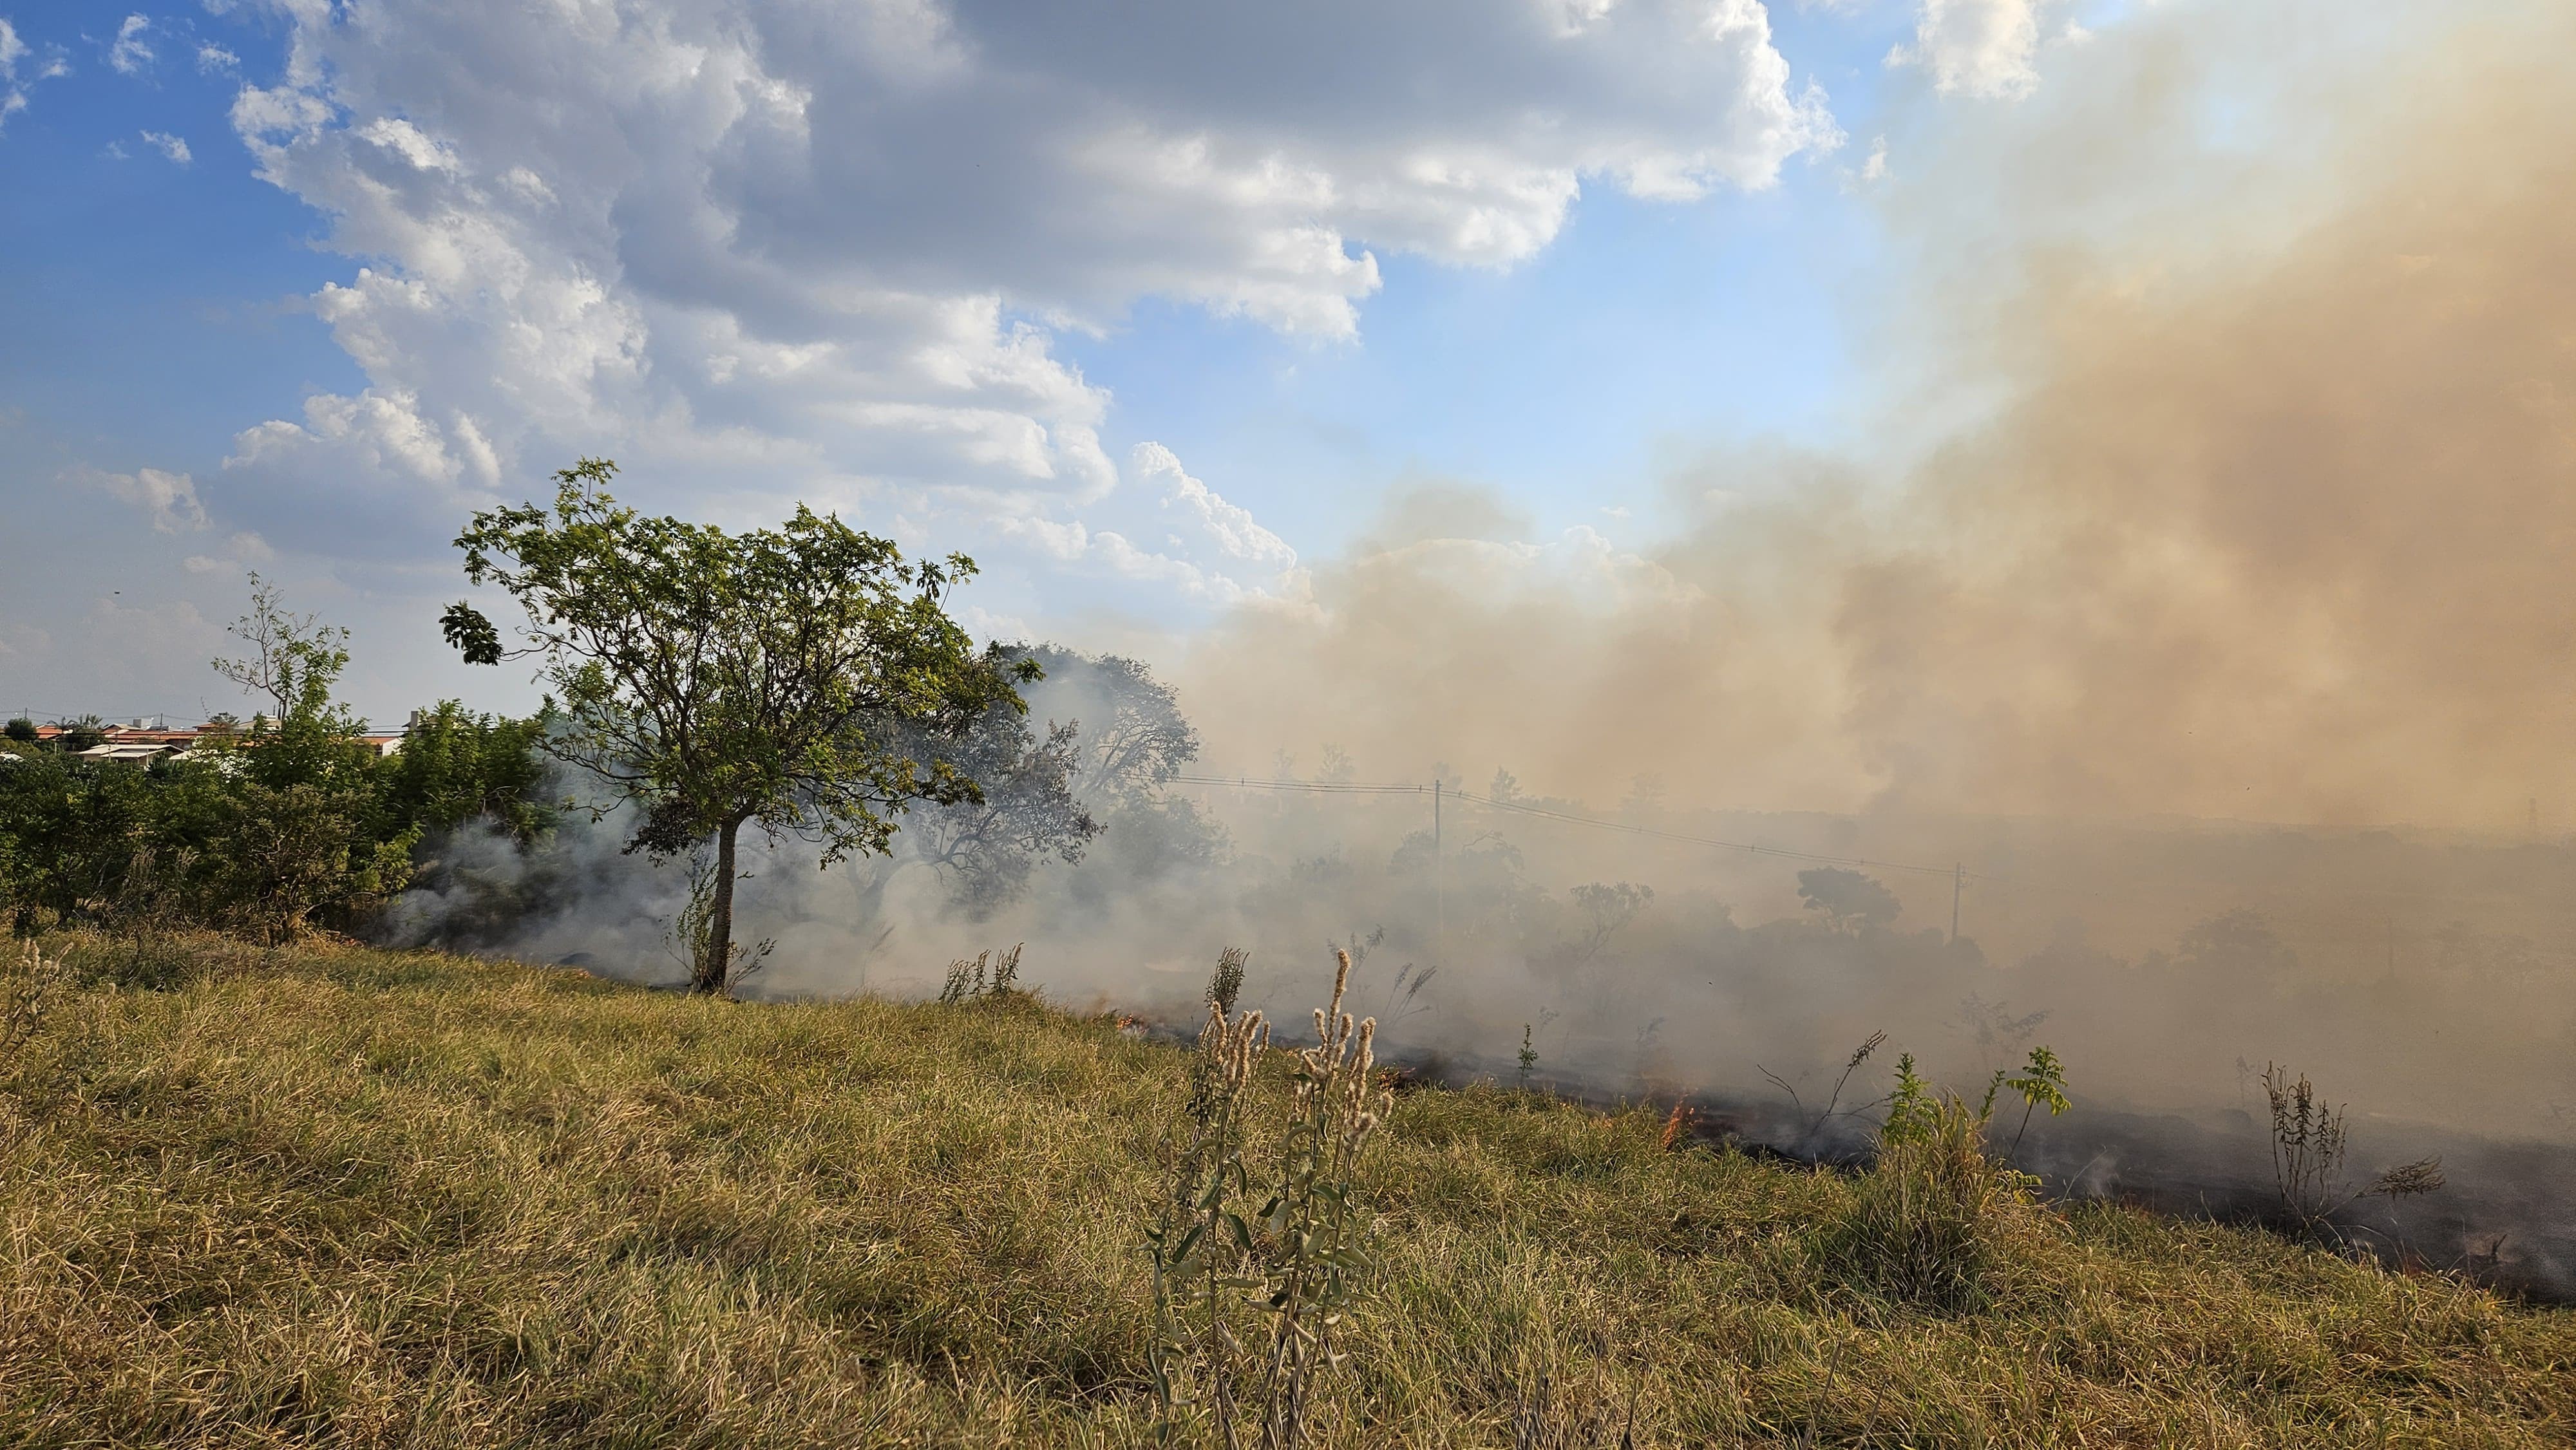 Incêndio atinge mata próxima a área de preservação em Campinas